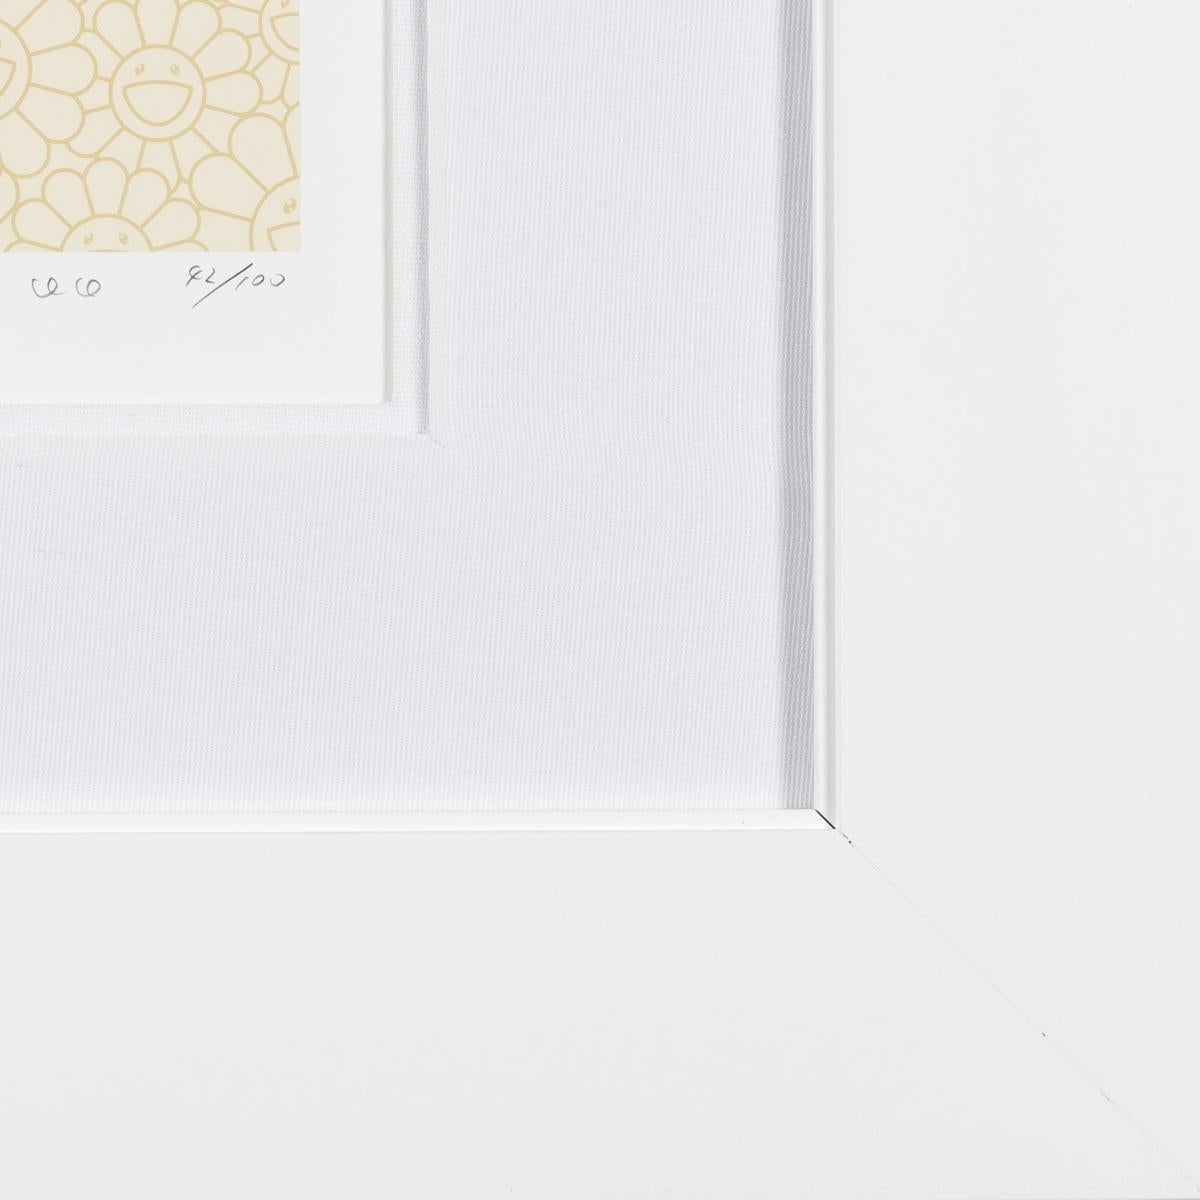 DOB 2020 Pearl Gold White ist eine handgefertigte Lithografie auf Papier, 14,5 x 14,5 Zoll Bildgröße, signiert und nummeriert 42/100 unten rechts. Gerahmt in einem zeitgenössischen weißen Rahmen.
